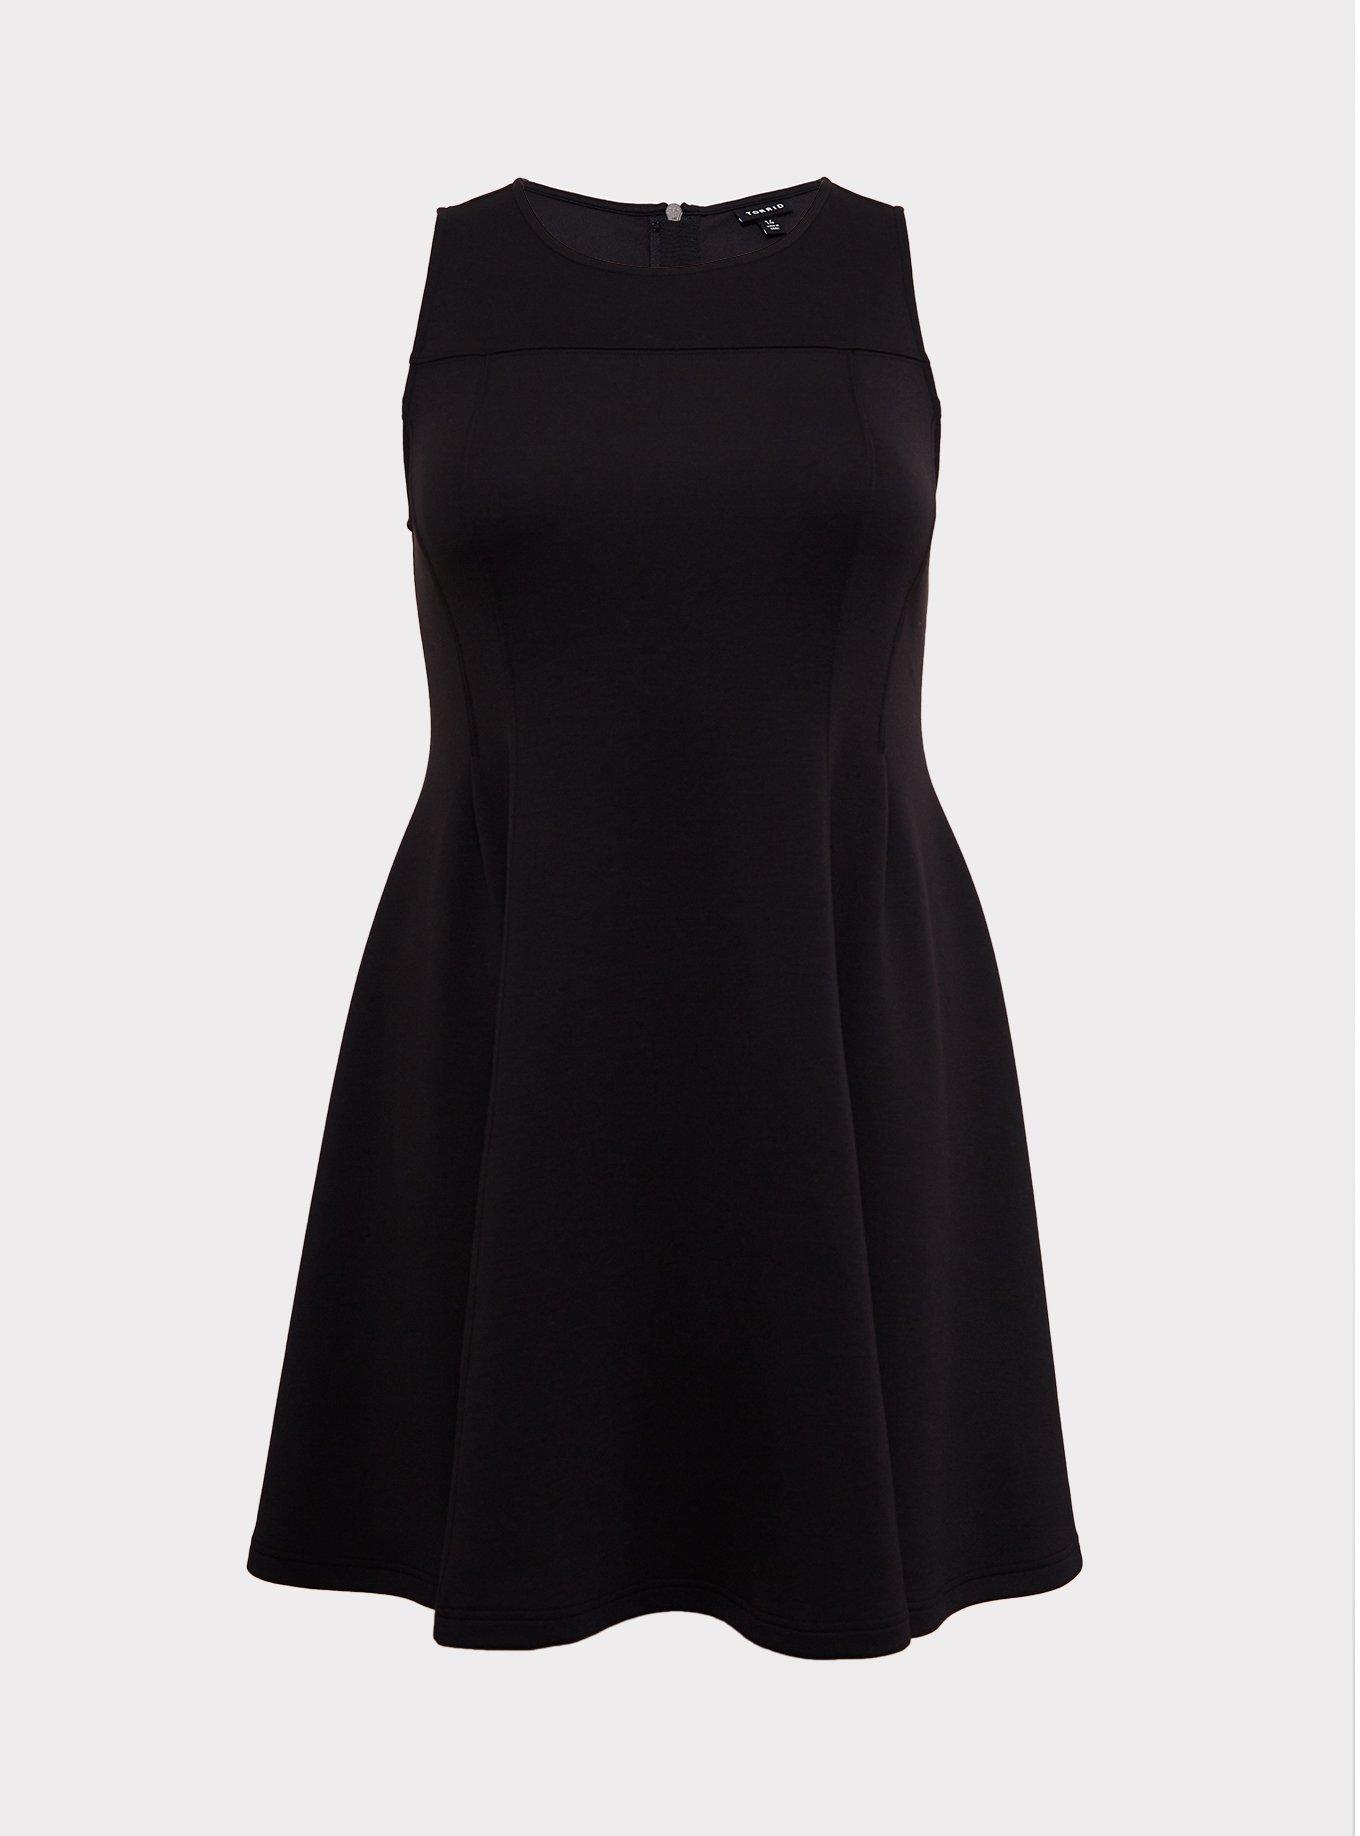 Plus Size - Black Scuba Knit Fluted Dress - Torrid